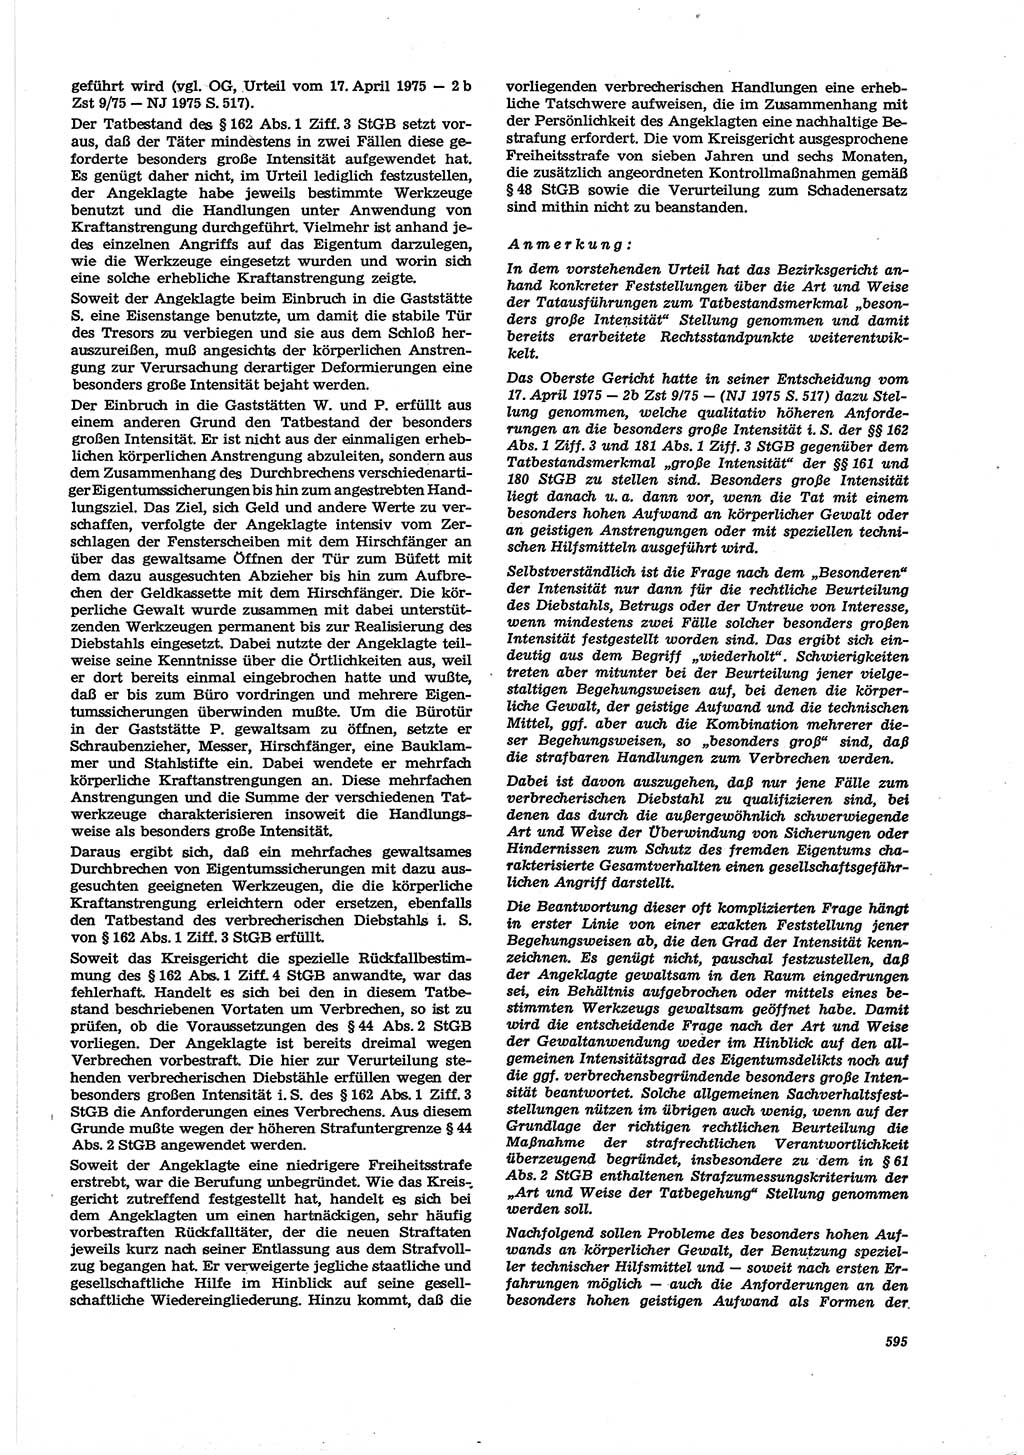 Neue Justiz (NJ), Zeitschrift für Recht und Rechtswissenschaft [Deutsche Demokratische Republik (DDR)], 30. Jahrgang 1976, Seite 595 (NJ DDR 1976, S. 595)